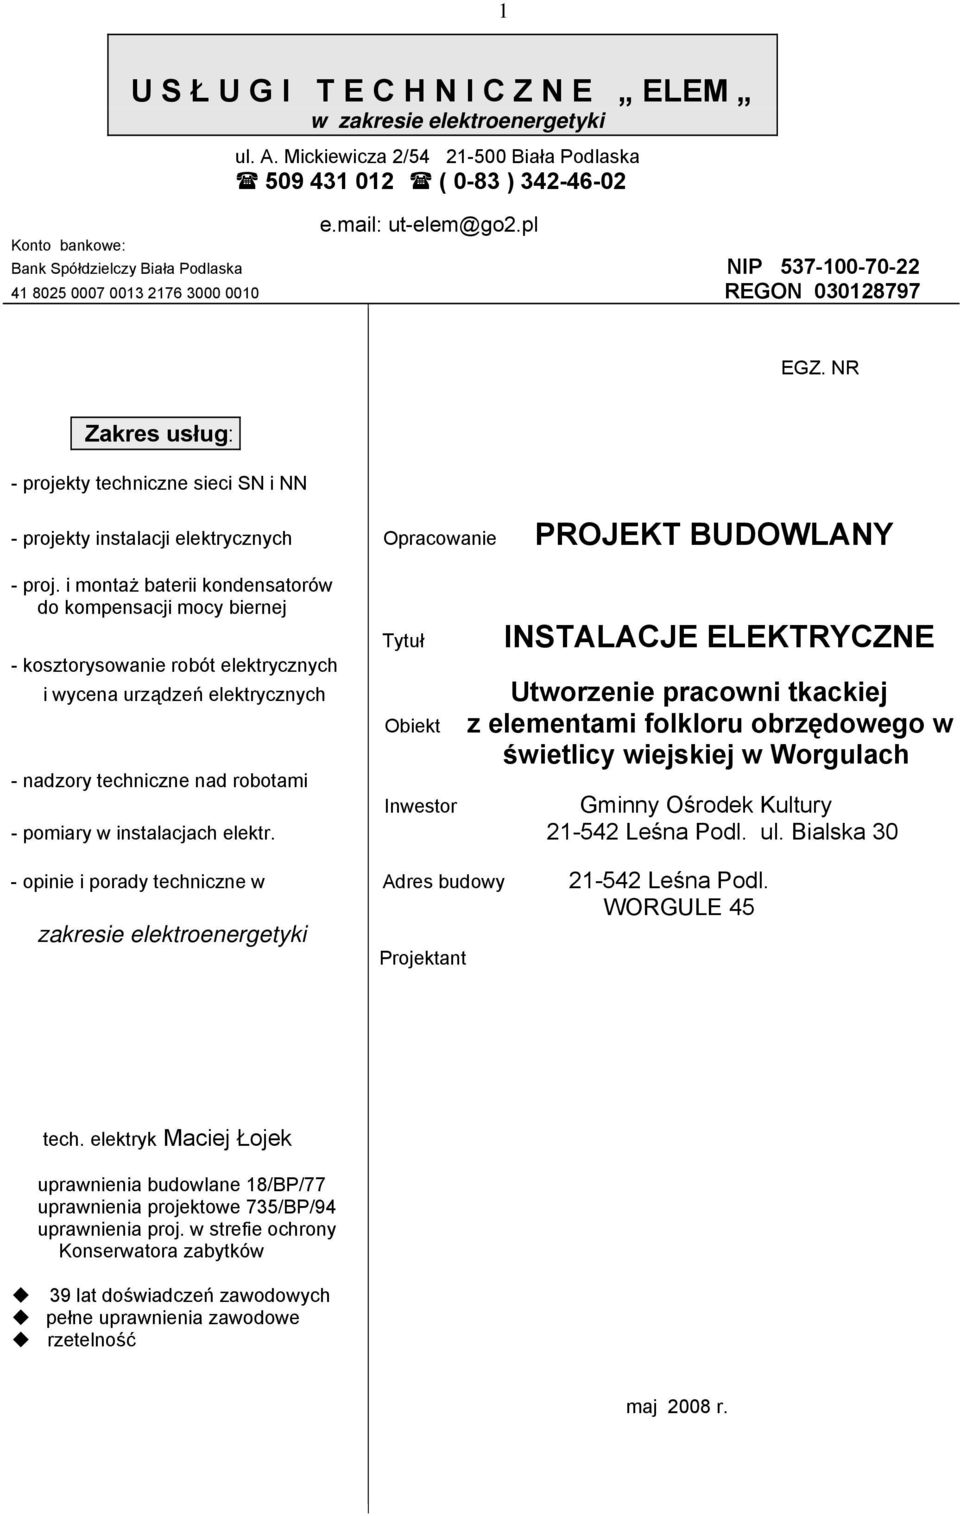 NR Zakres usług: - projekty techniczne sieci SN i NN - projekty instalacji elektrycznych Opracoanie PROJEKT BUDOWLANY - proj.